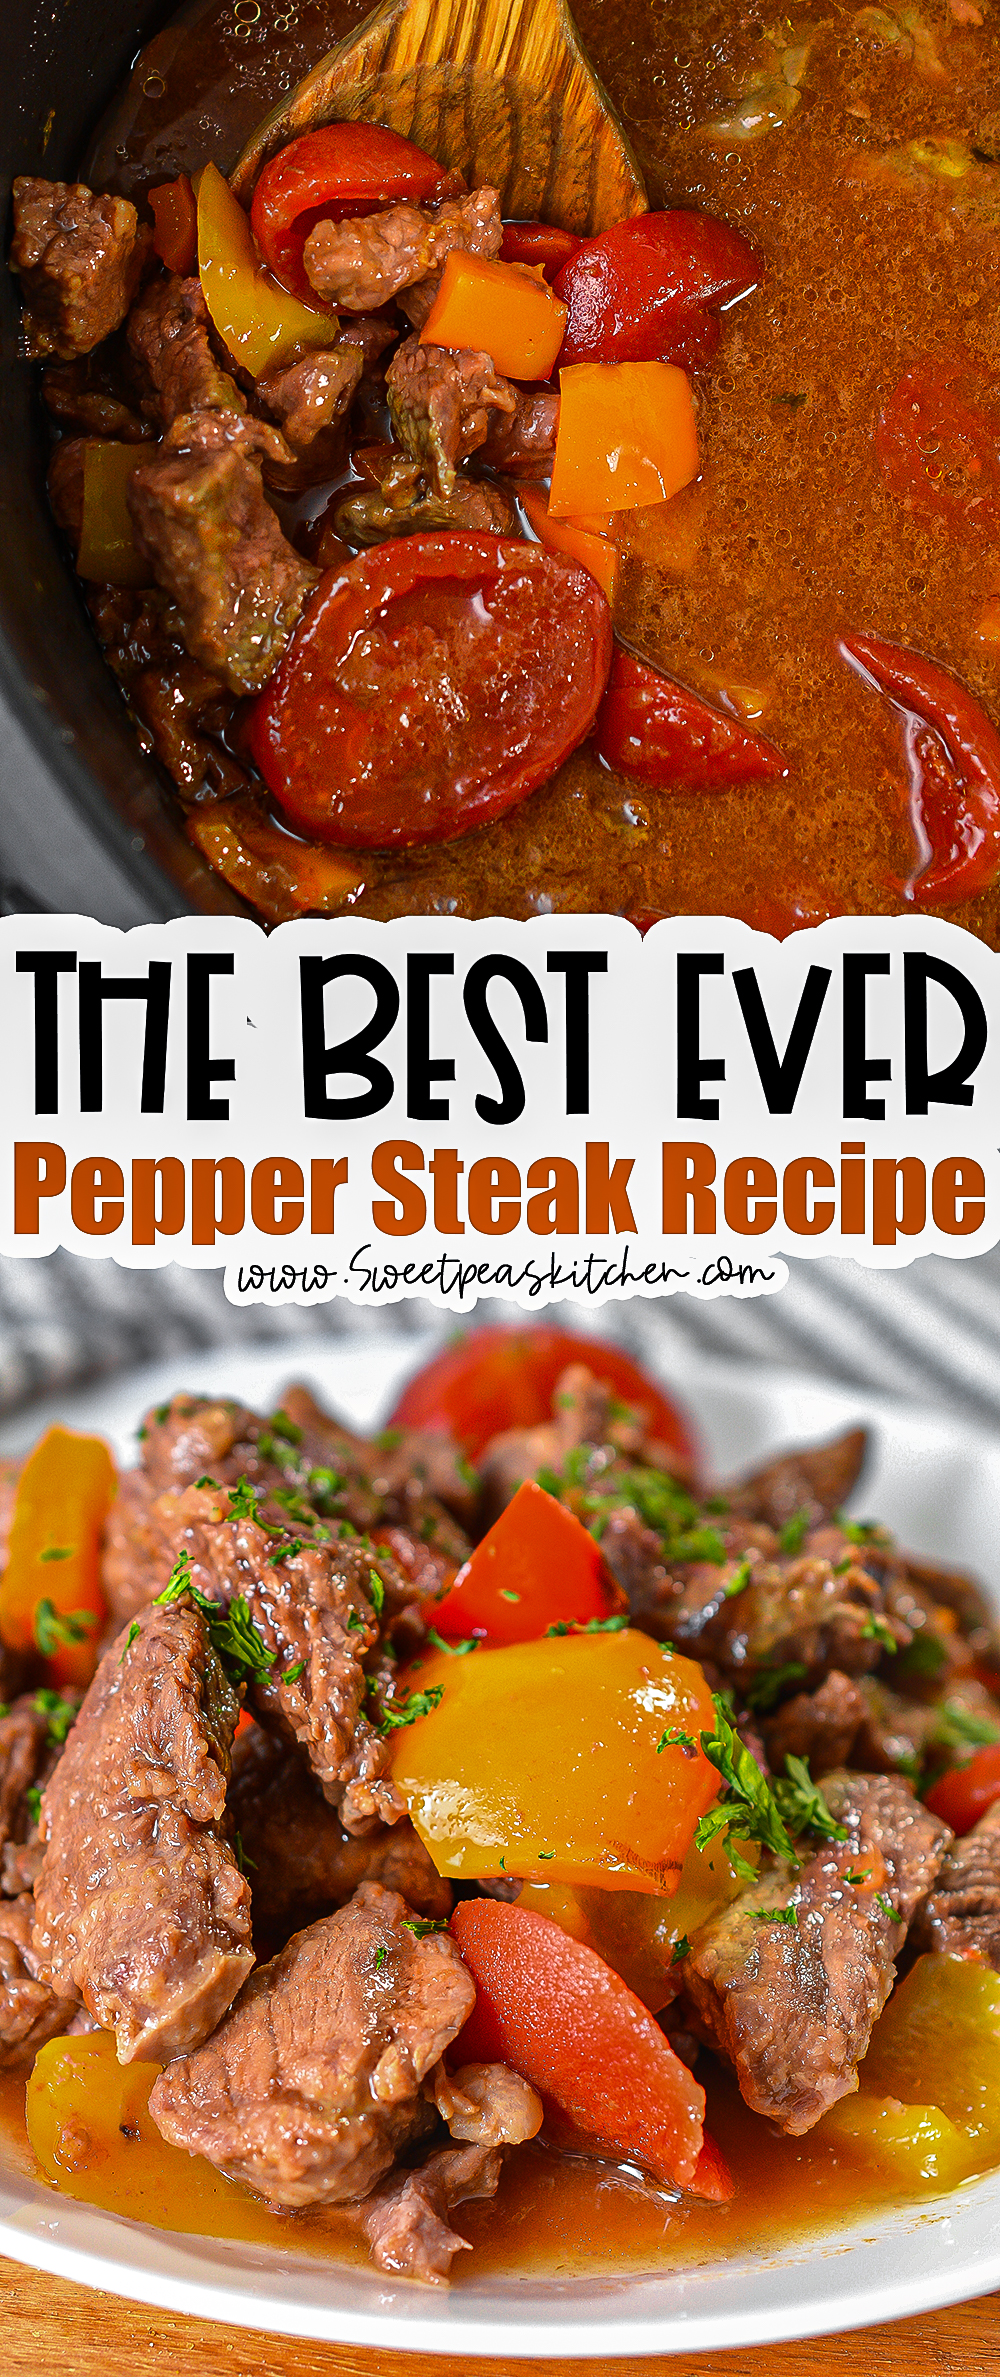 Best Ever Pepper Steak on Pinterest